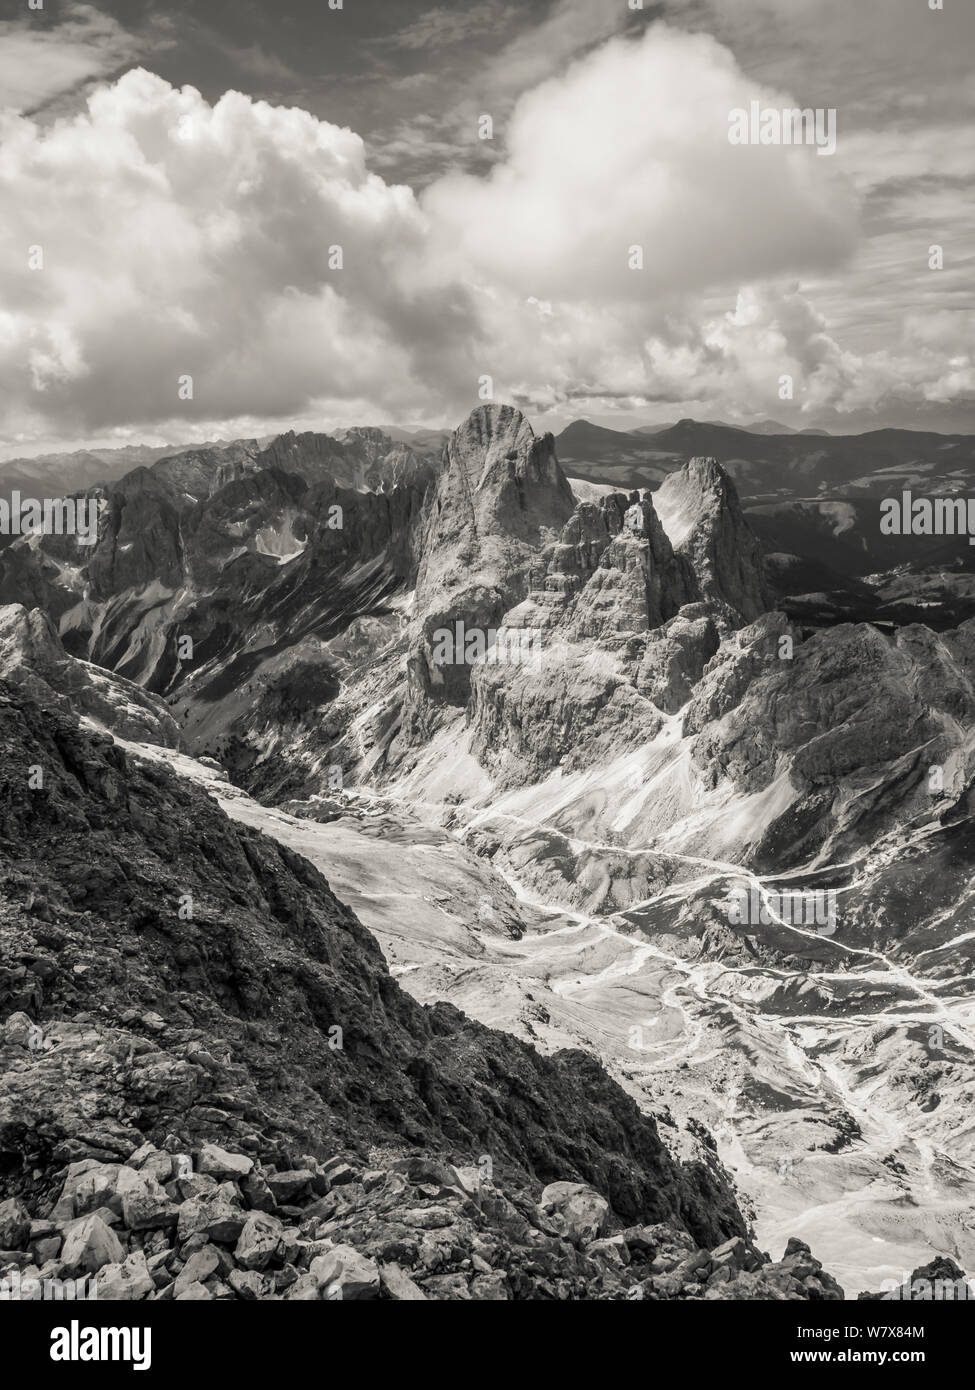 Paysage de montagnes escarpées en monochrome des principaux sommets de l'ensemble de montagnes Rosengarten dans les Dolomites italiennes de l'Alto Adige. Banque D'Images